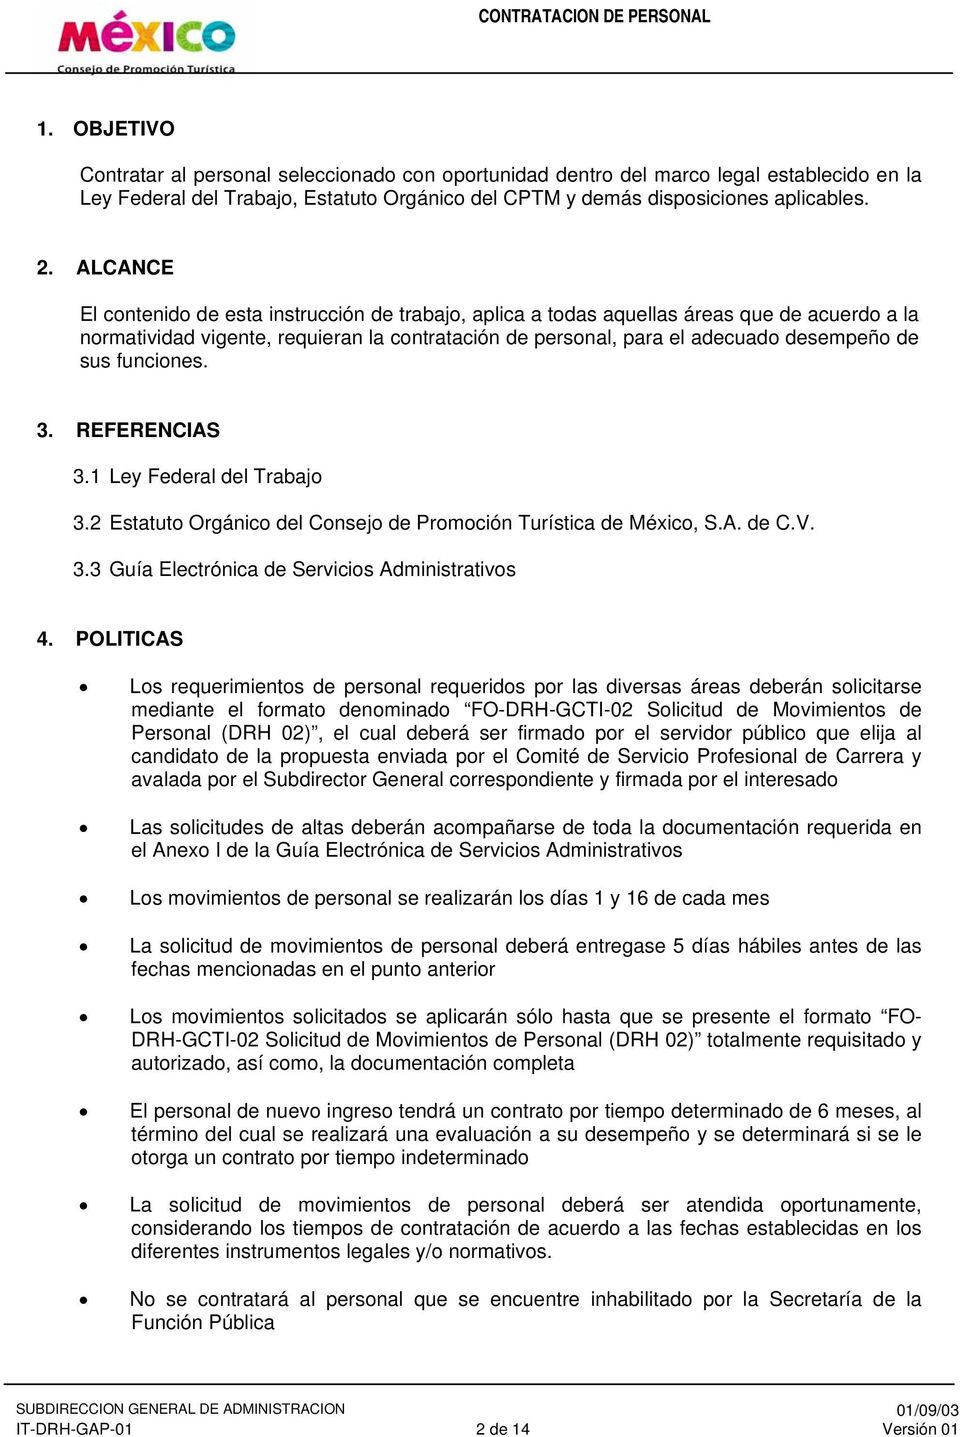 funciones. 3. REFERENCIAS 3.1 Ley Federal del Trabajo 3.2 Estatuto Orgánico del Consejo de Promoción Turística de México, S.A. de C.V. 3.3 Guía Electrónica de Servicios Administrativos 4.